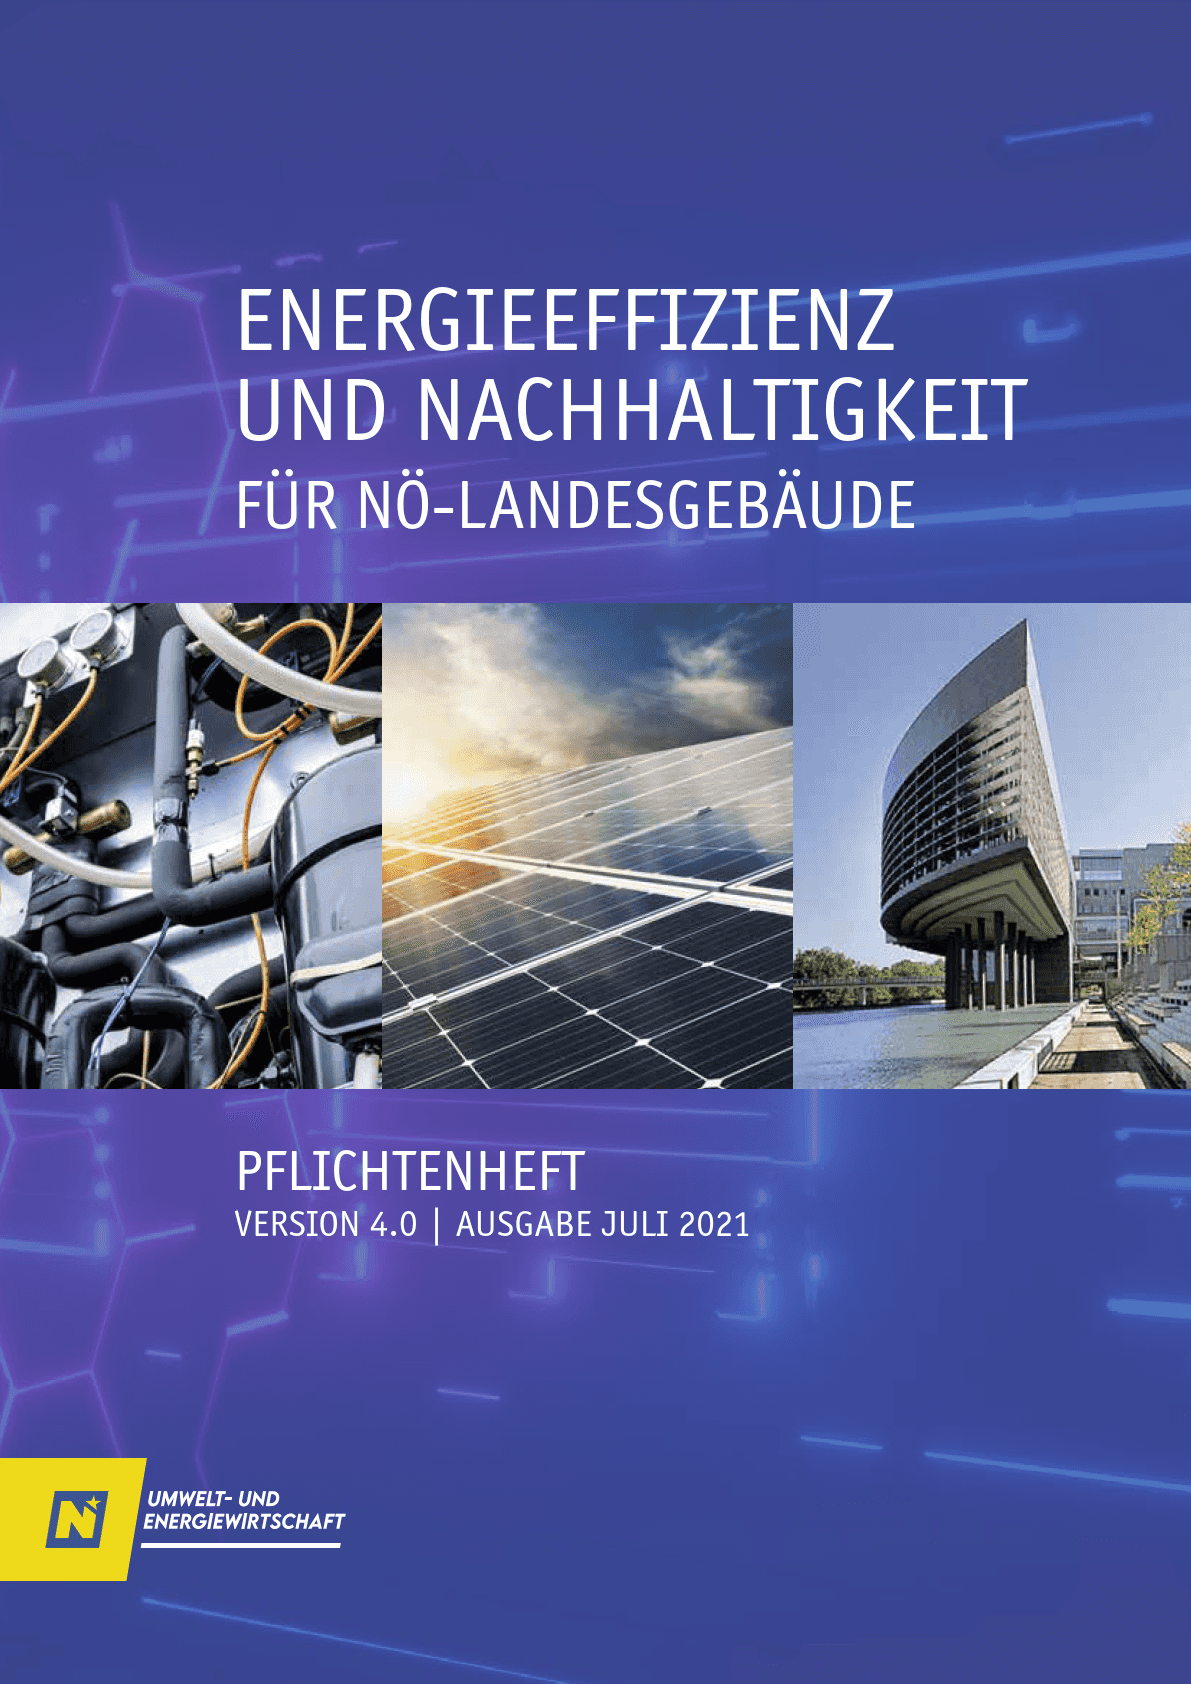 Das Cover des Pflichtenheftes Energieeffizienz und Nachhaltigkeit für Landesgebäude 4.0.